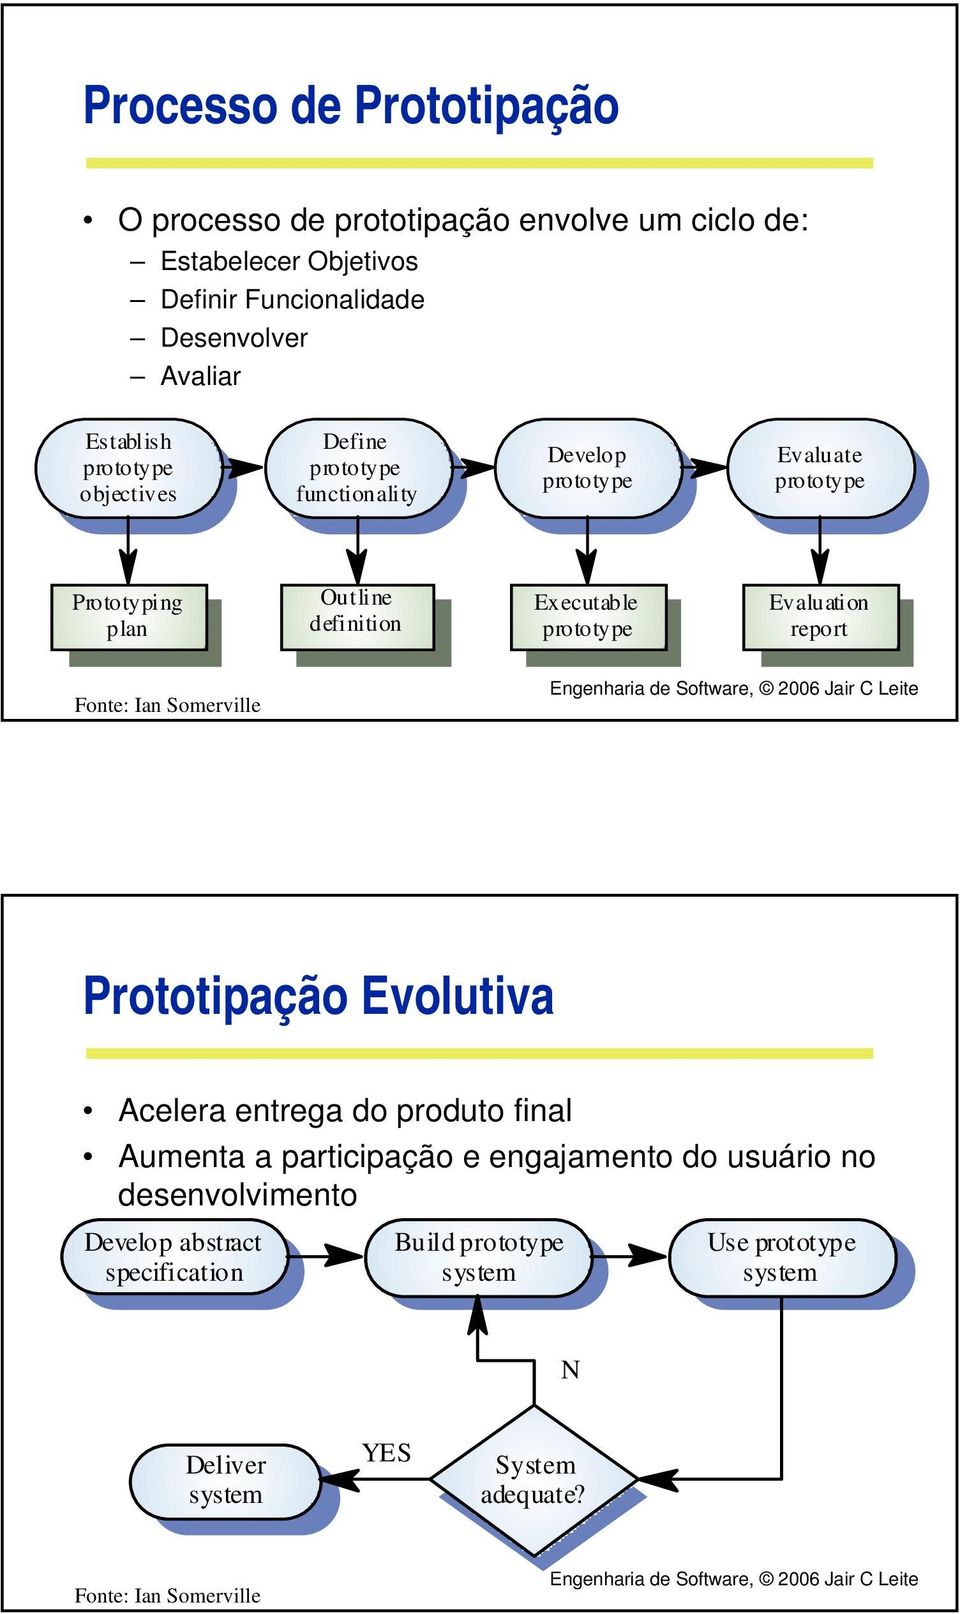 Outline definition Executable Evaluation report Prototipação Evolutiva Acelera entrega do produto final Aumenta a